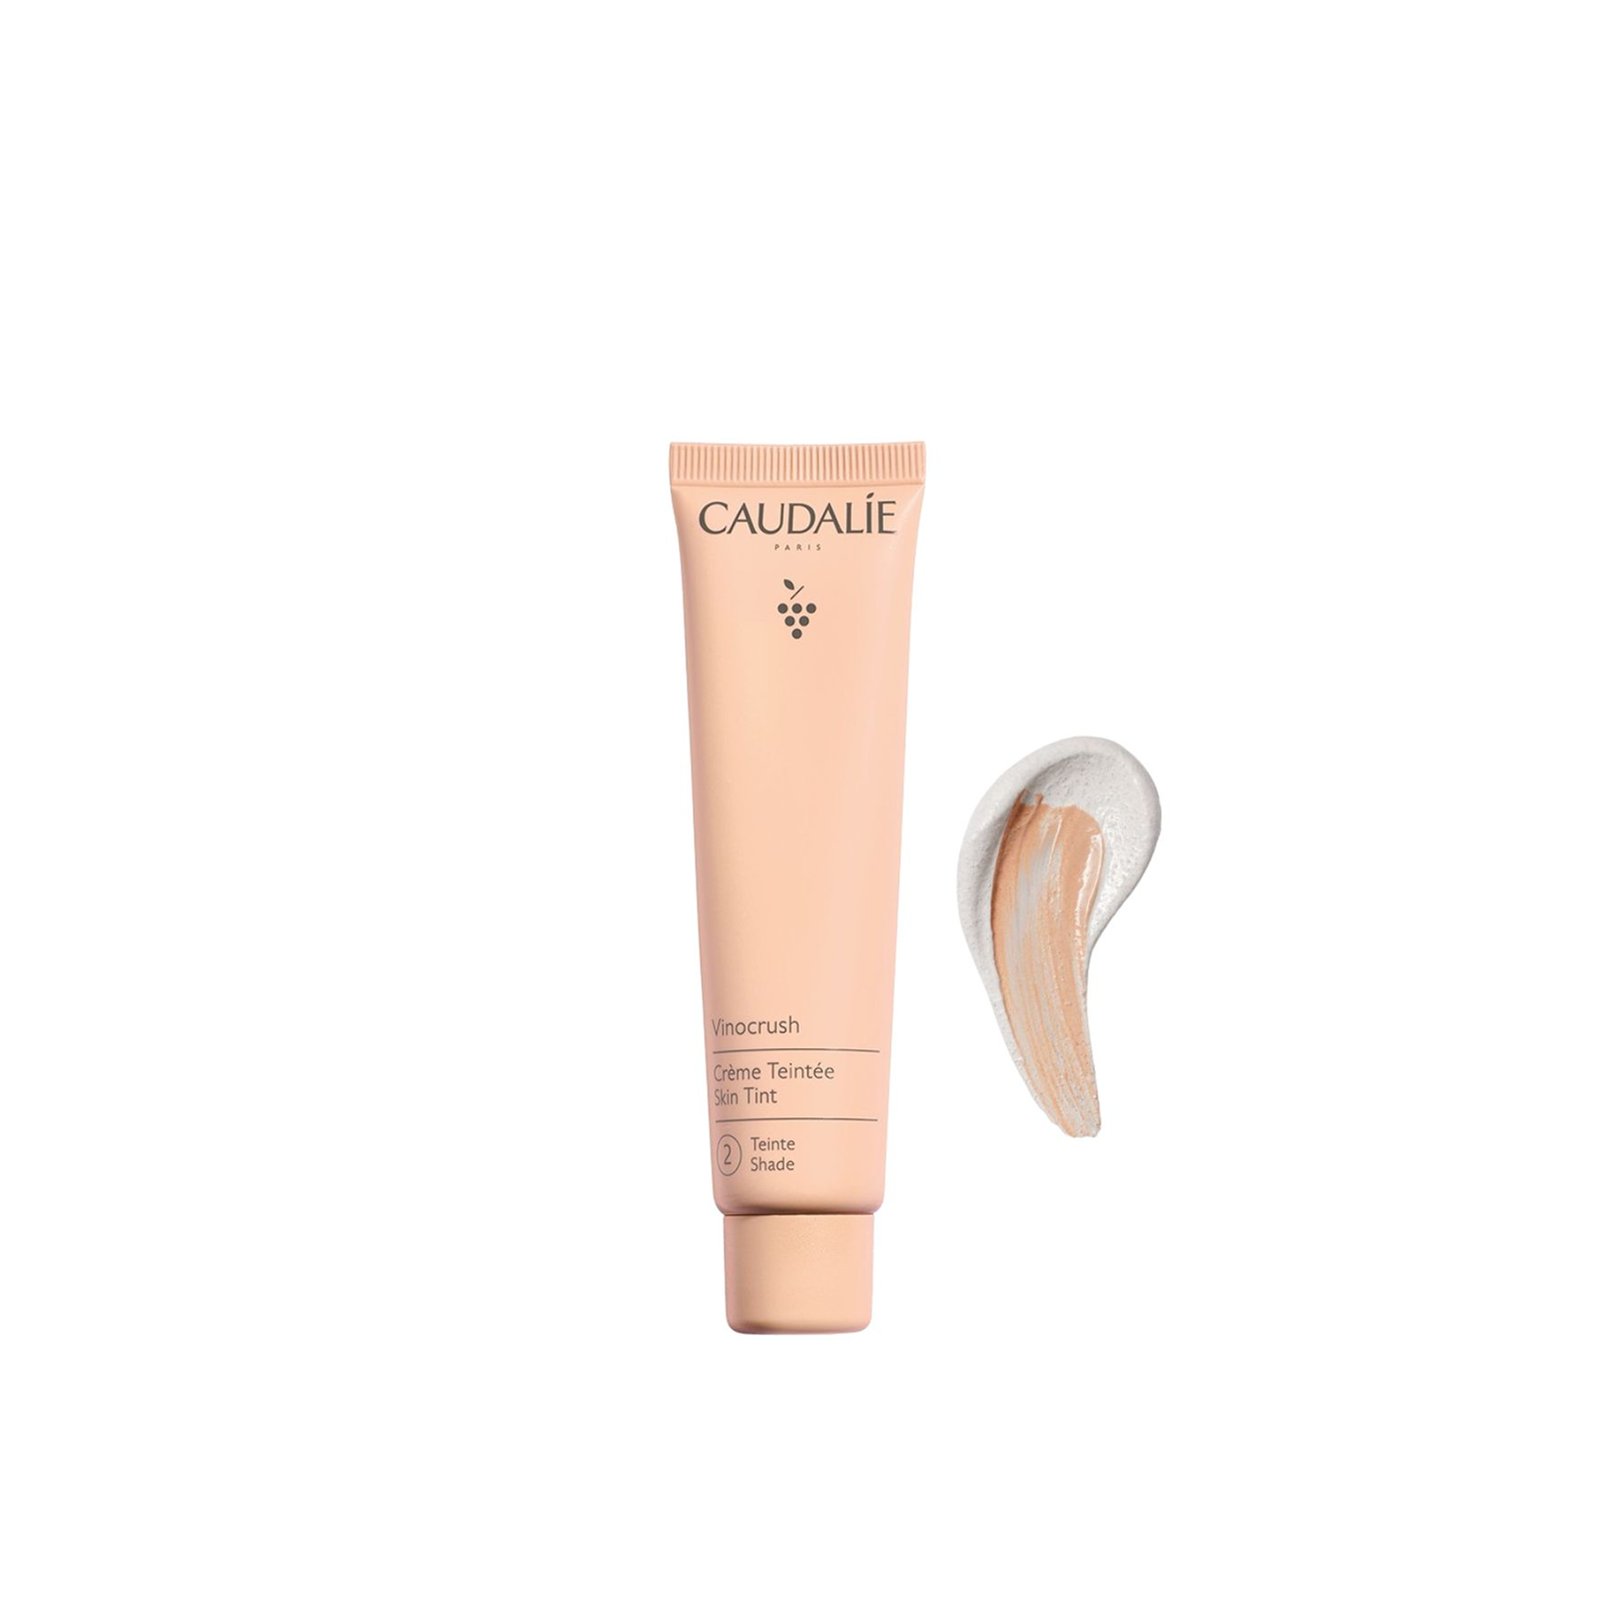 Caudalie Vinocrush Skin Tinted Cream 2 30ml (1floz)